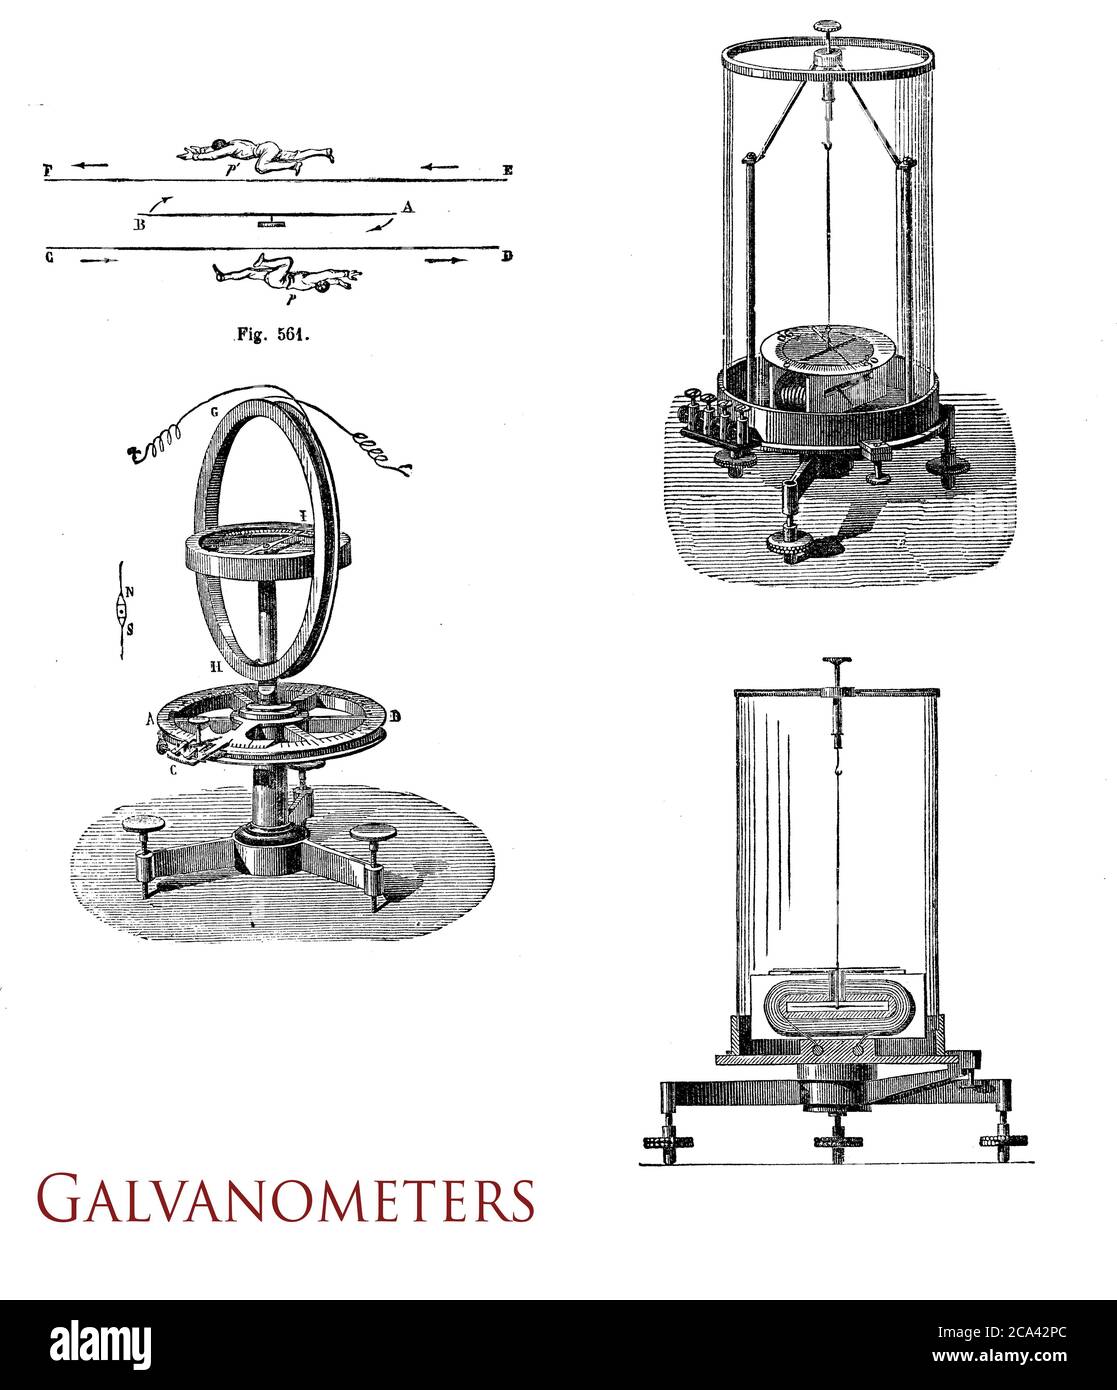 Physik, Elektrizität vintage Illustration von Galvanometern, erste Strommessgeräte nach dem italienischen Physiker Luigi Galvani benannt Stockfoto